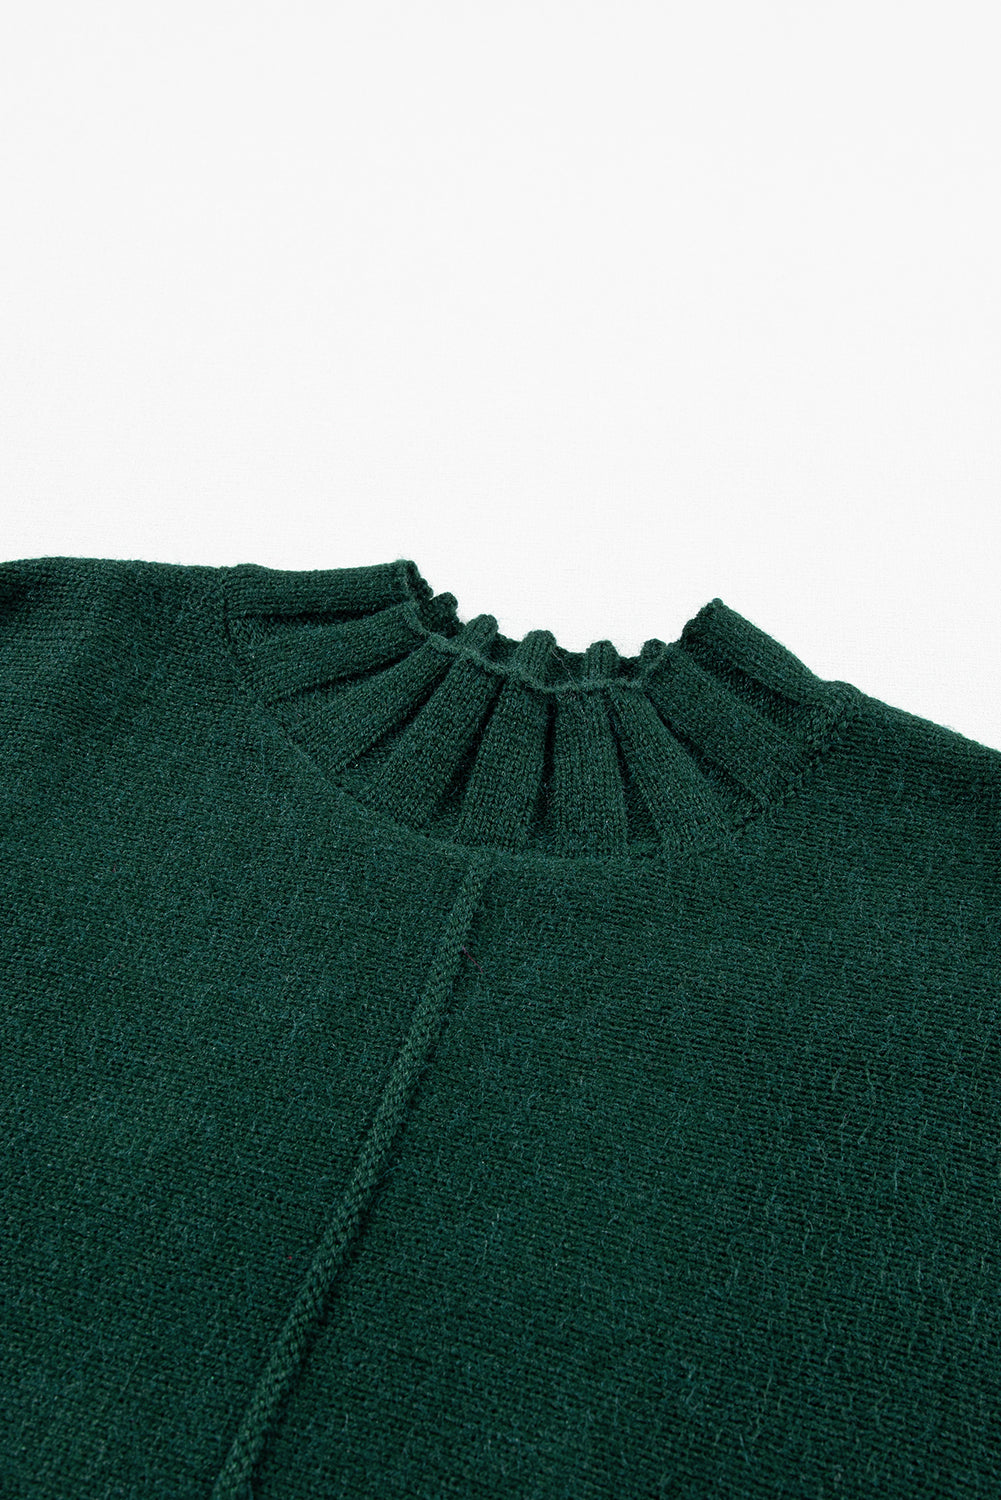 Pull en tricot gris moyen à manches courtes et col montant chauve-souris